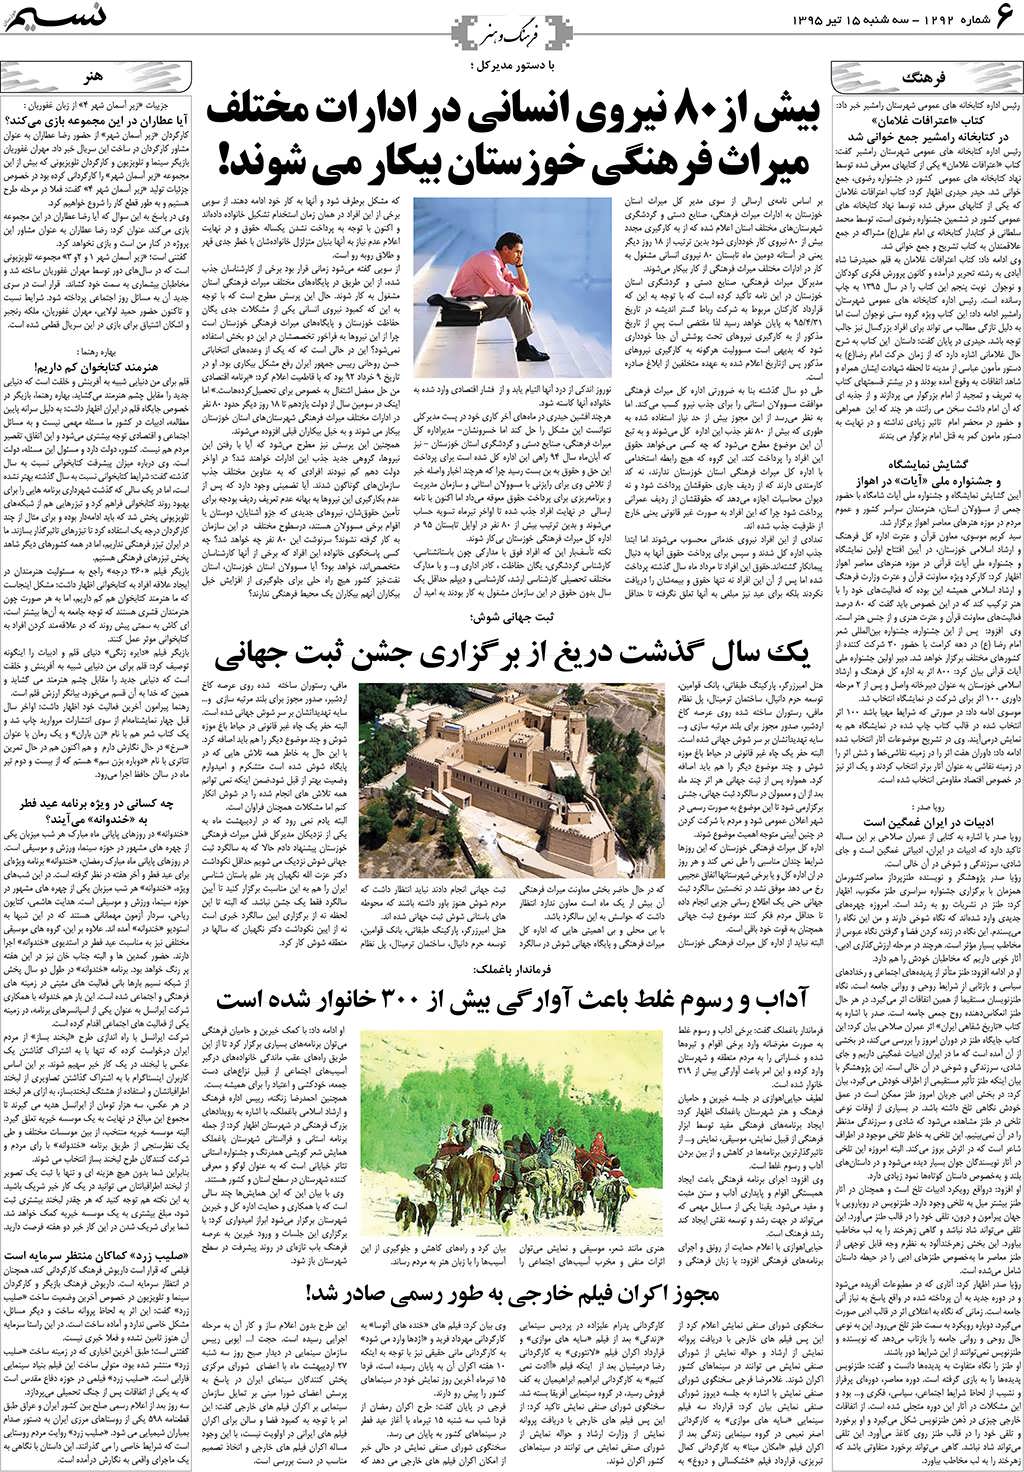 صفحه فرهنگ و هنر روزنامه نسیم شماره 1292